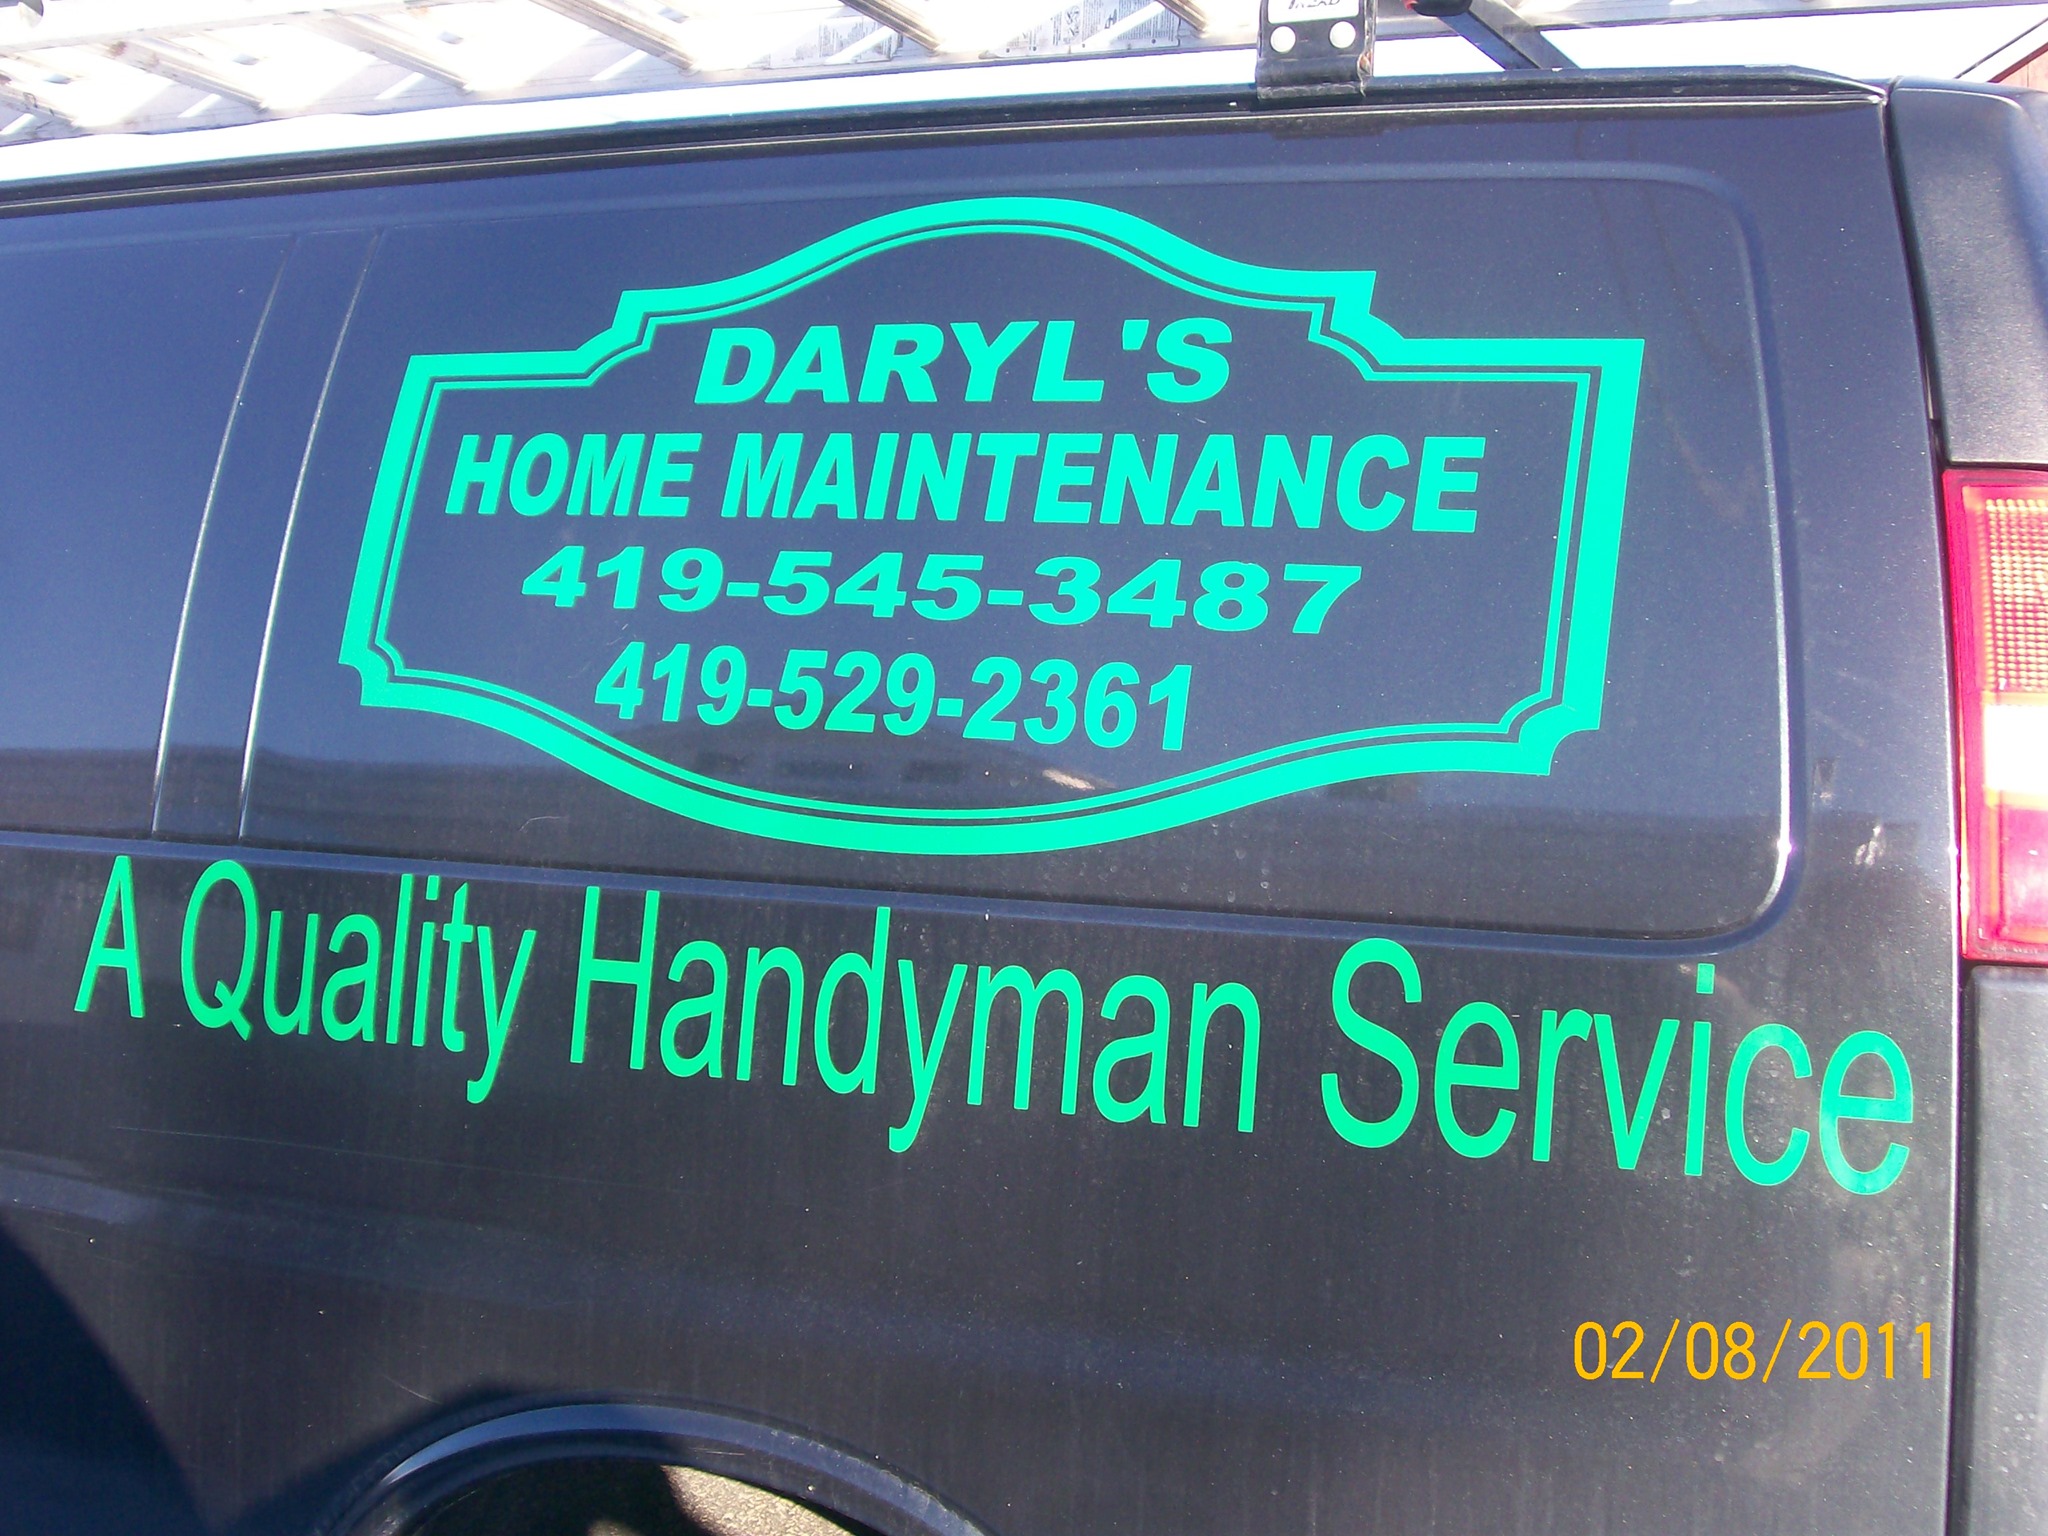 Daryl's Home Maintenance 1100 OH-314, Ontario Ohio 44903